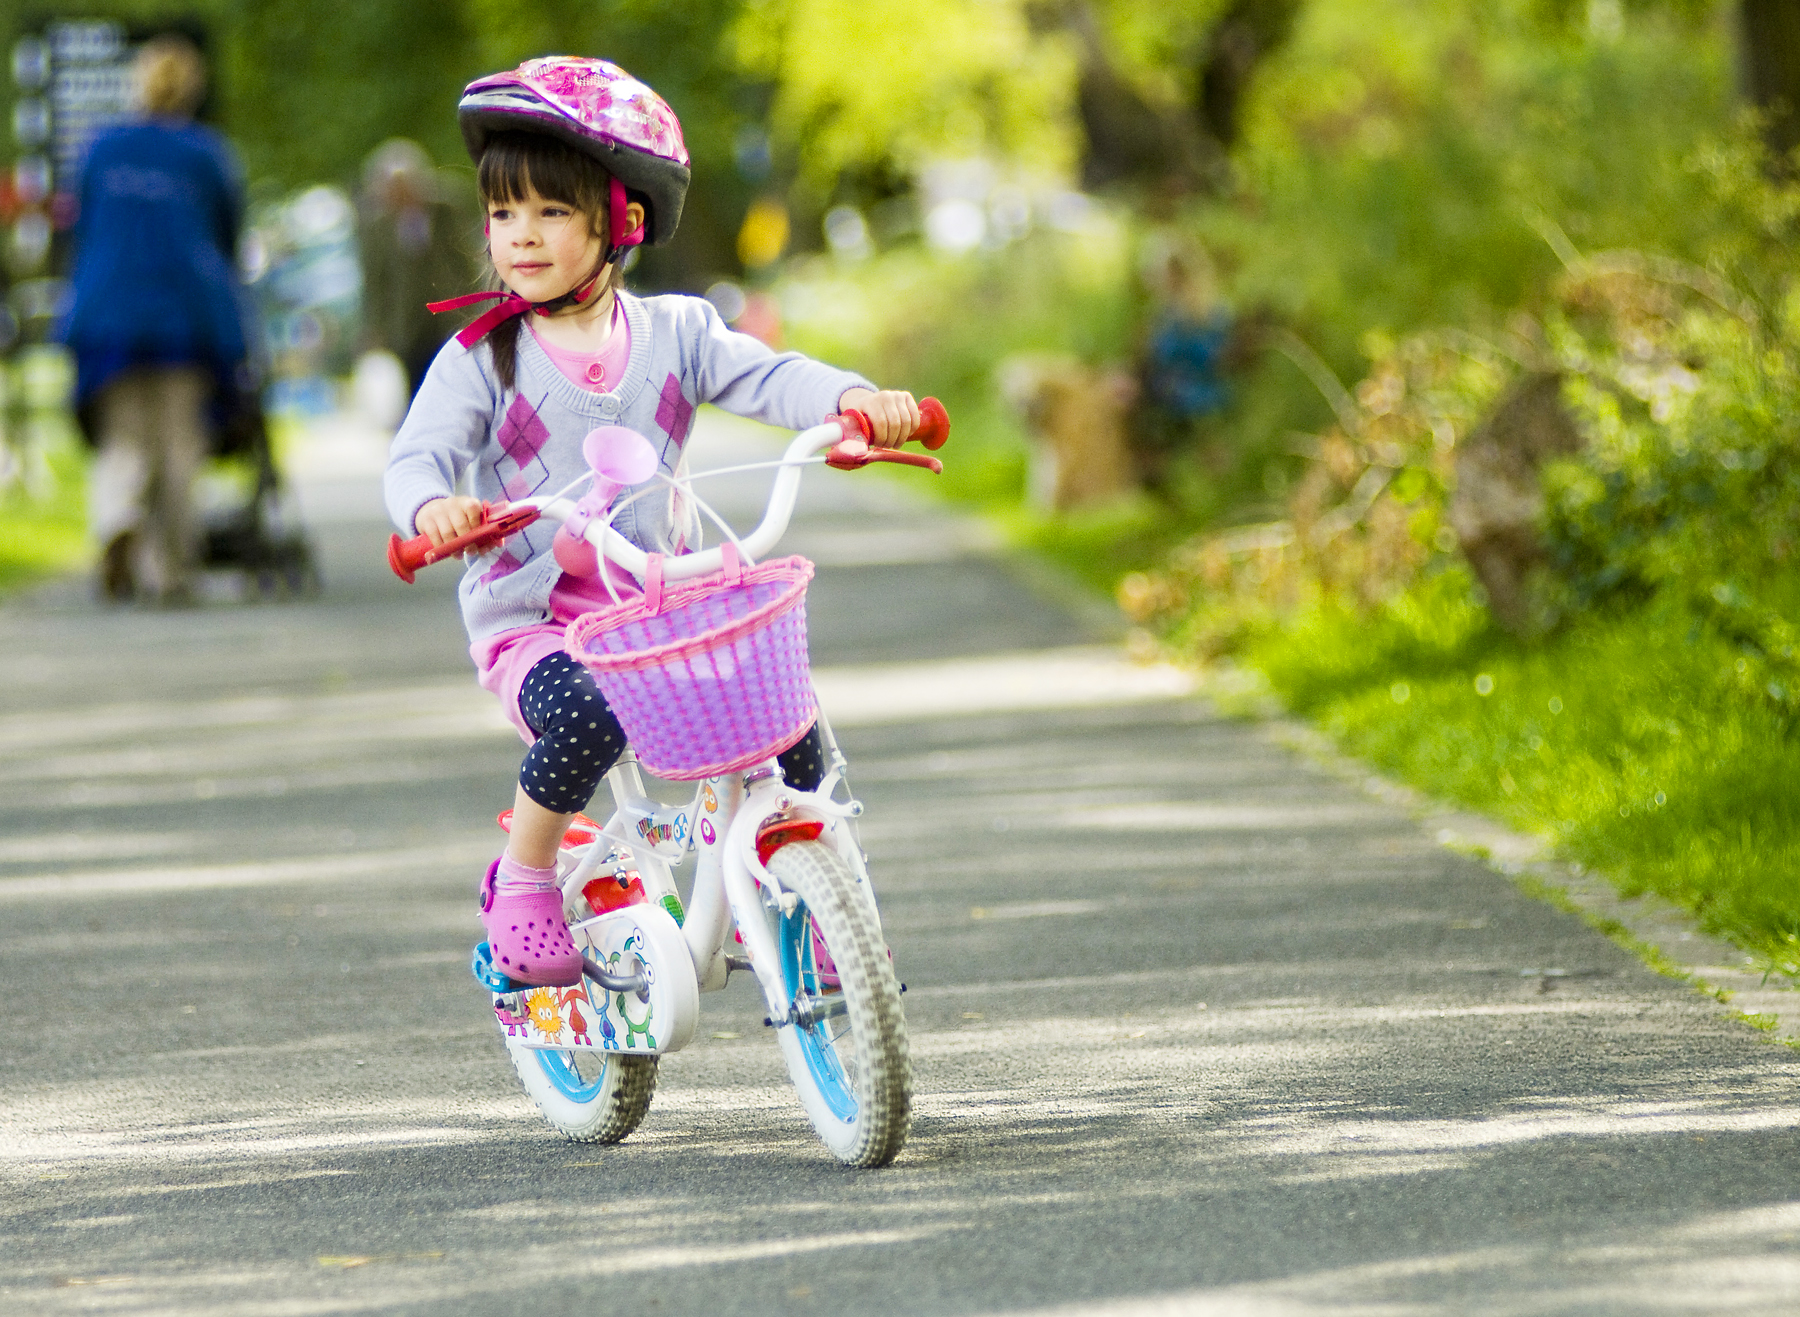 biciclette usate per bambini